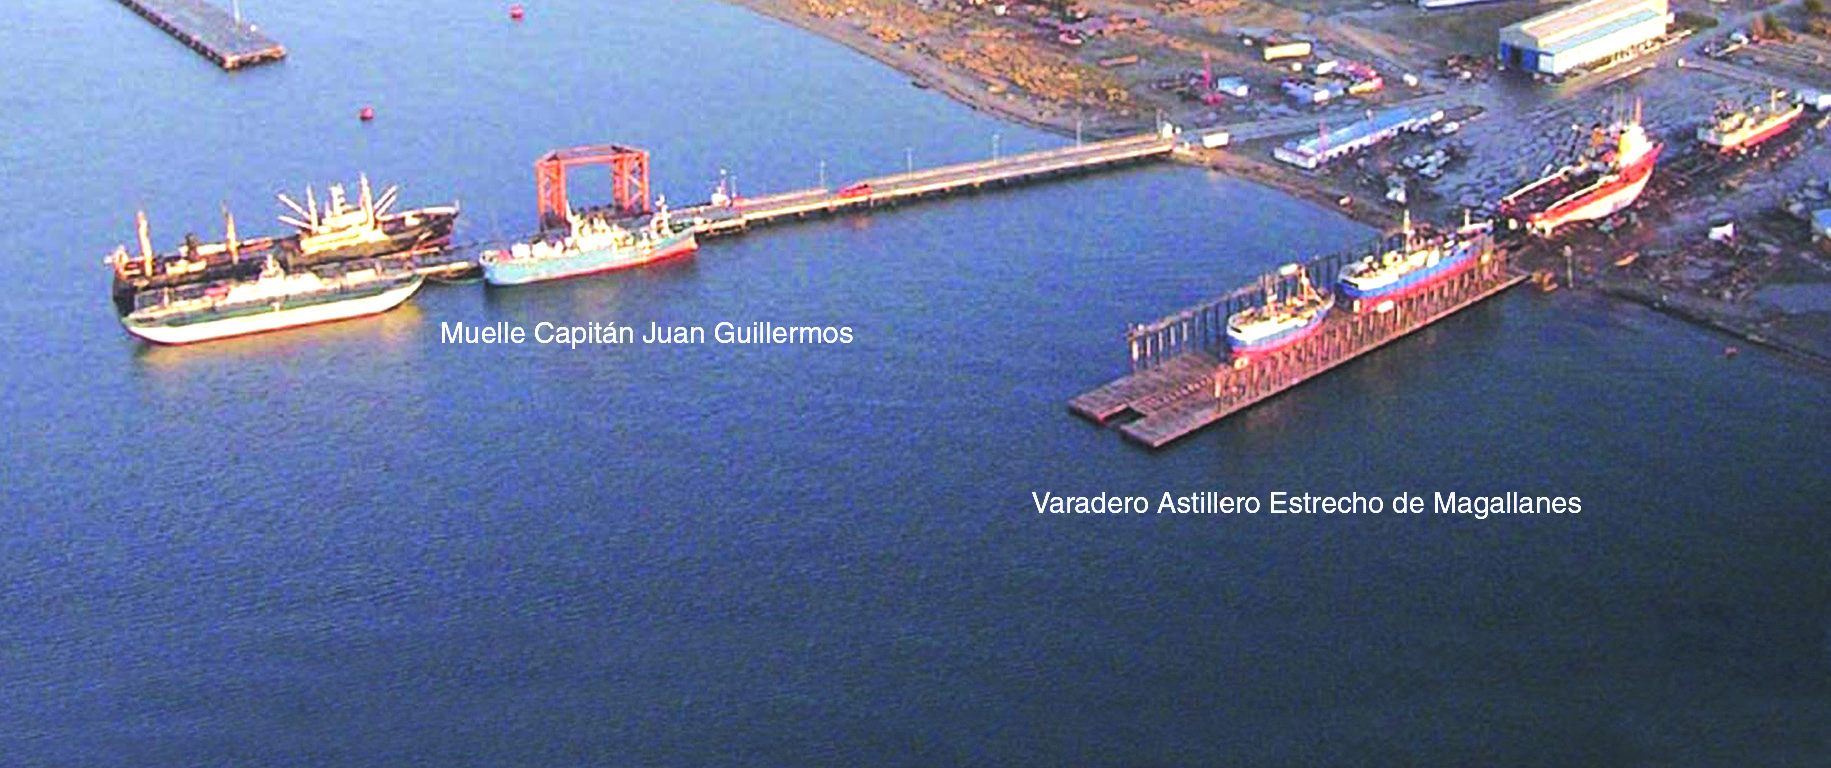 Cap. XI BAHÍA CATALINA (00) XI-8-17 Muelle Capitán Juan Guillermos y varadero Astillero Estrecho de Magallanes Atraque y largada.